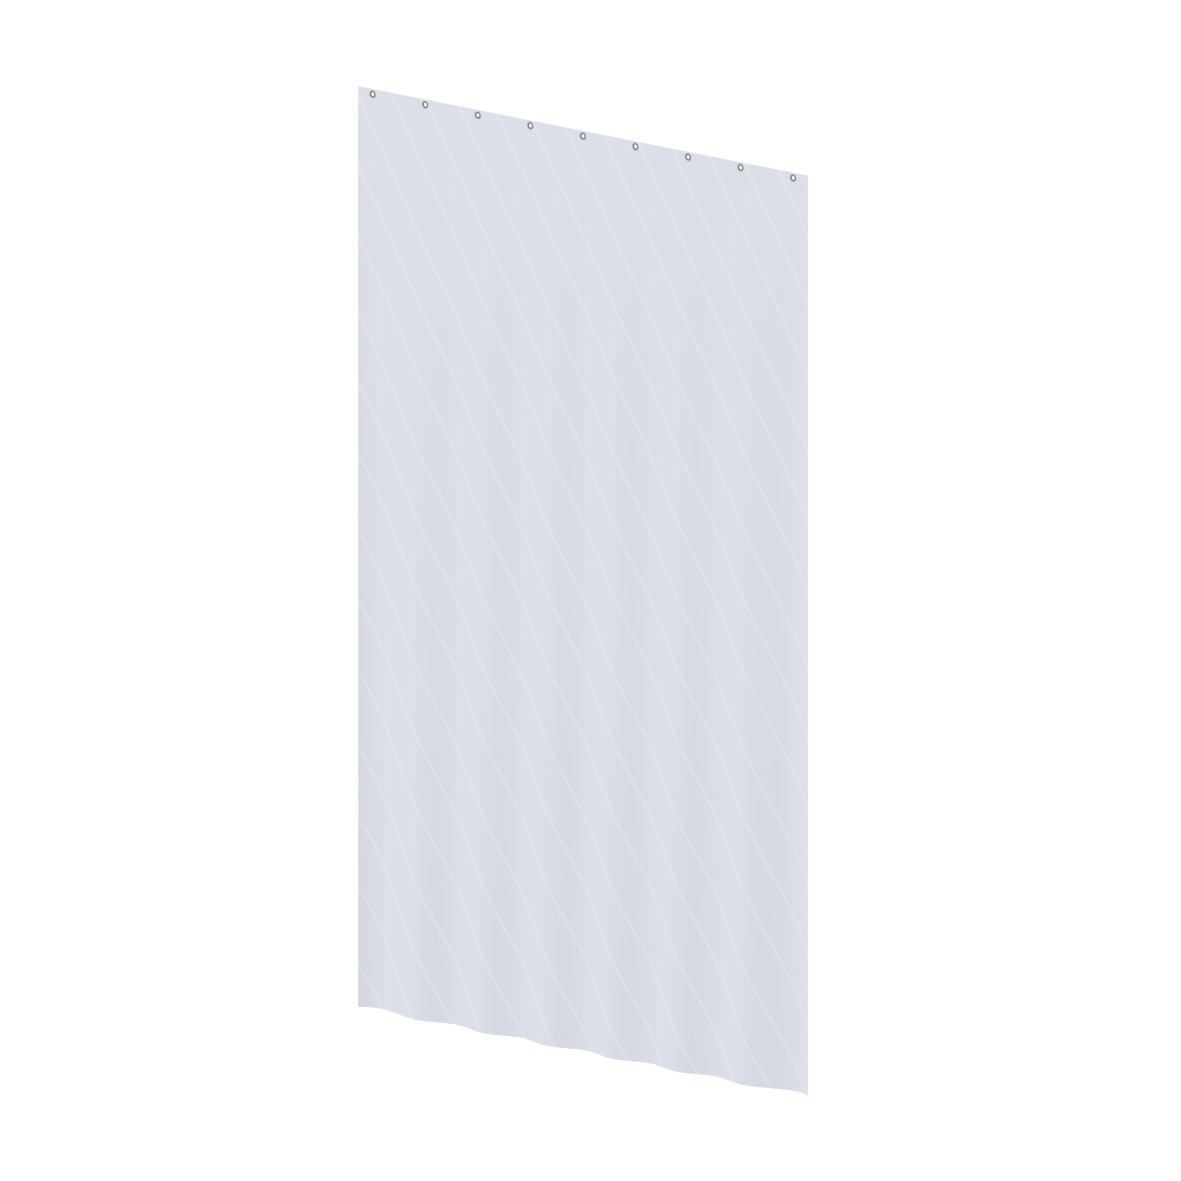 Care Rideau de douche, 1 x 1500 x 2000 mm, Blanc à rayures diagonales blanches